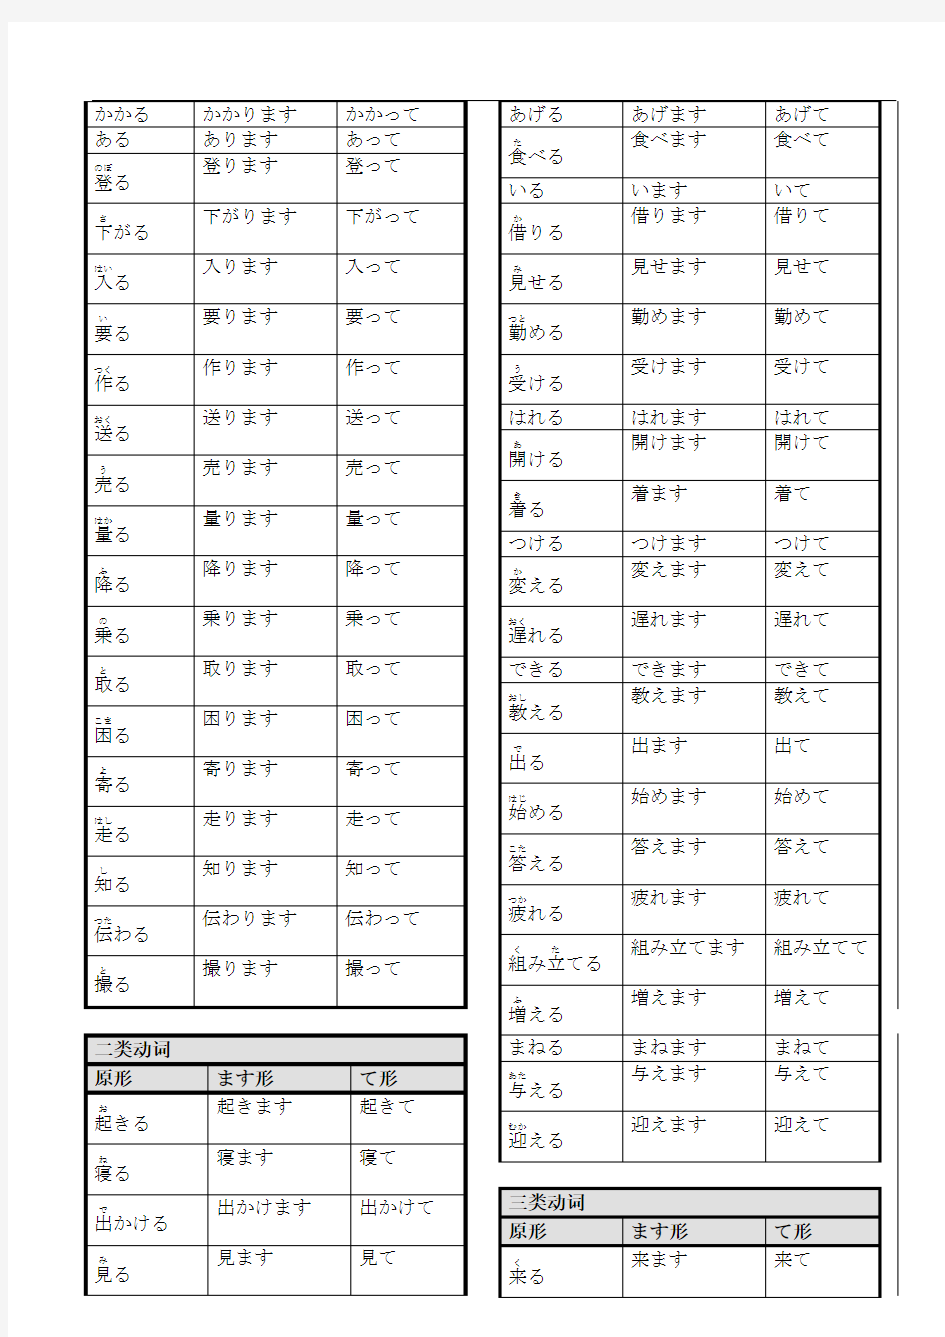 标准日本语动词表